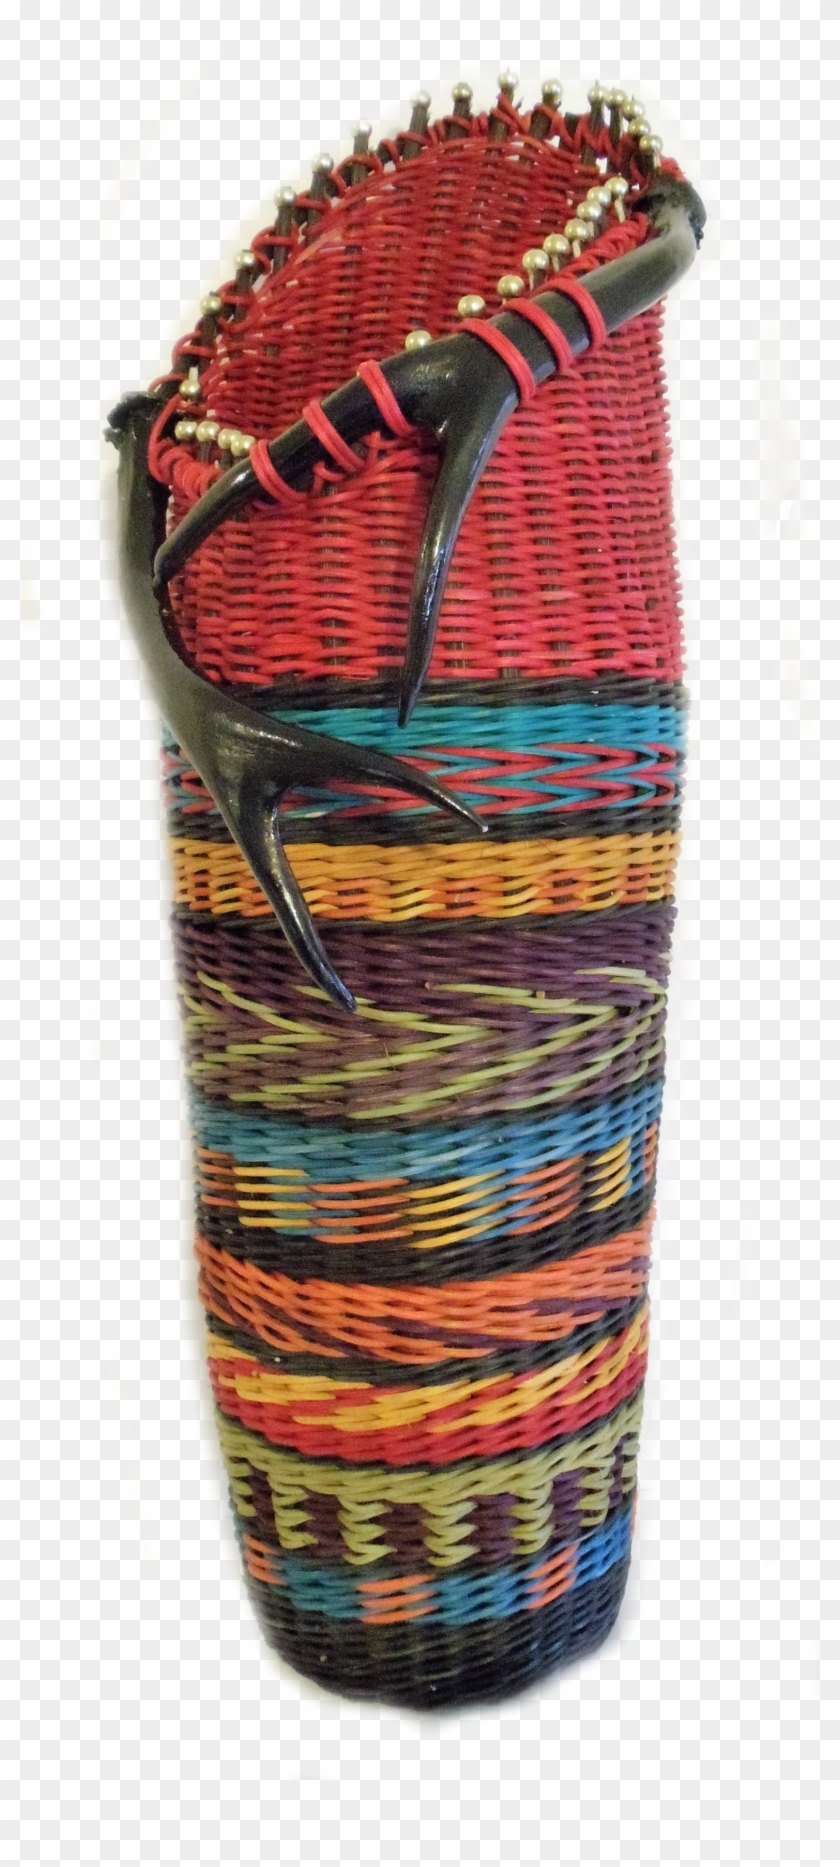 Indian Blanket Png - Basket Clipart #5642196